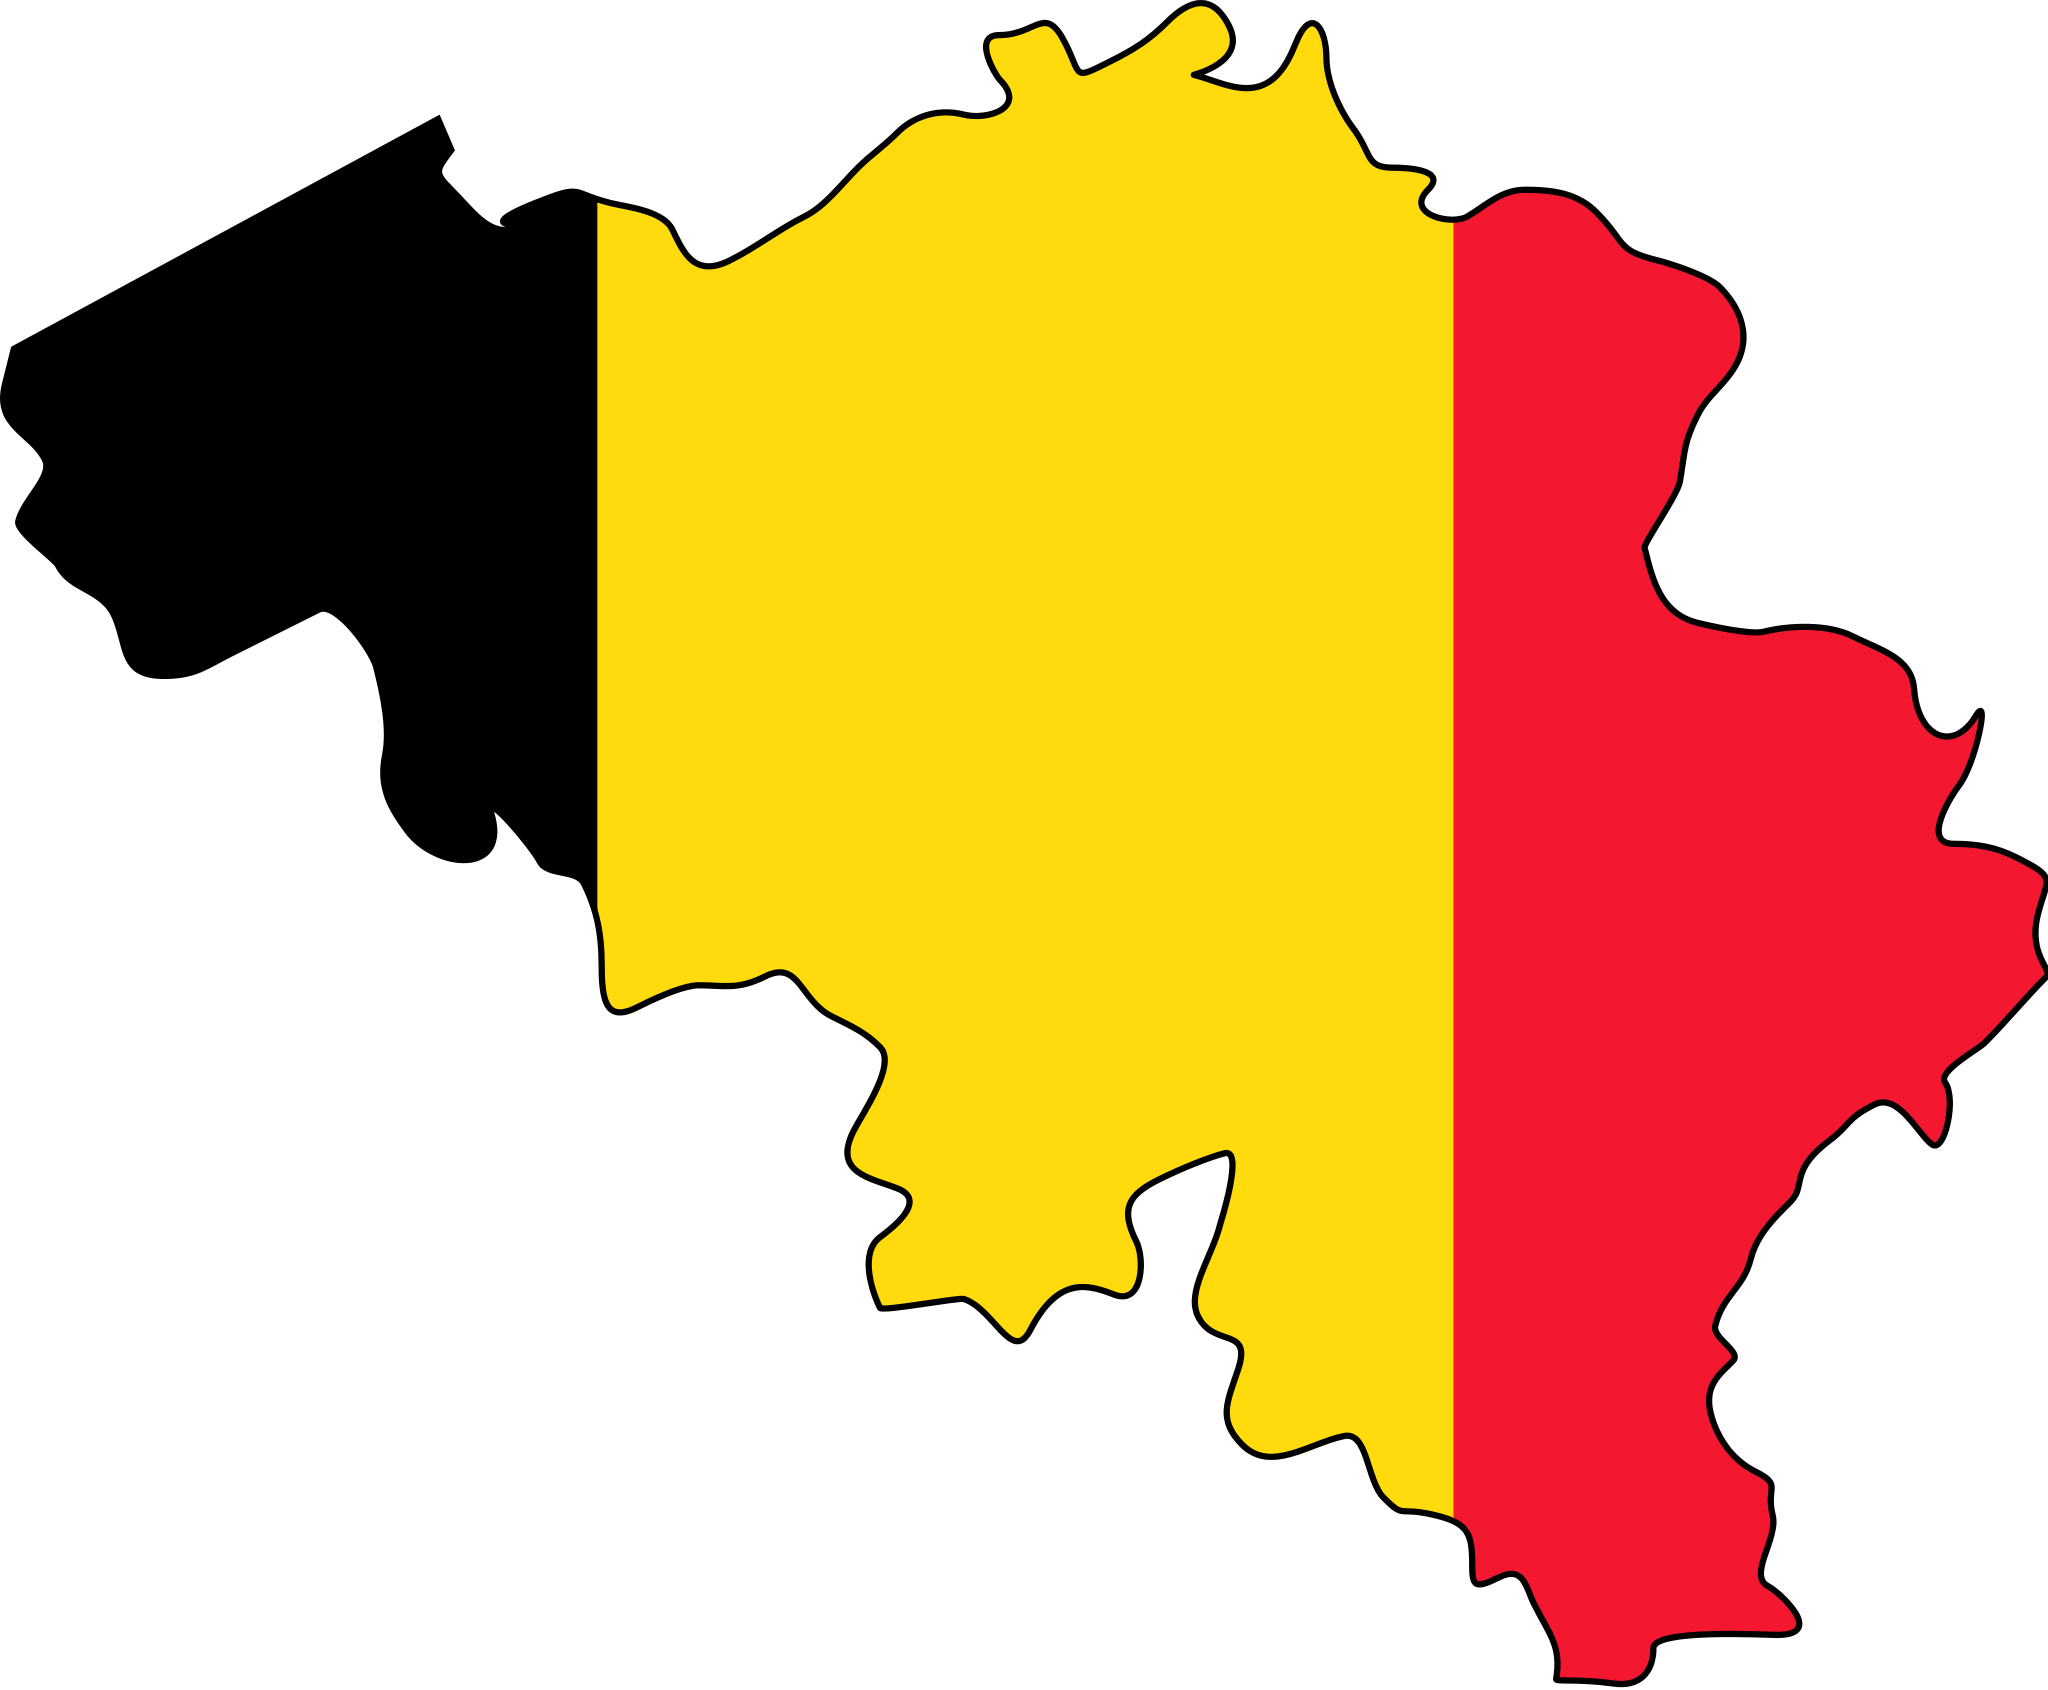 german clipart flag belgium